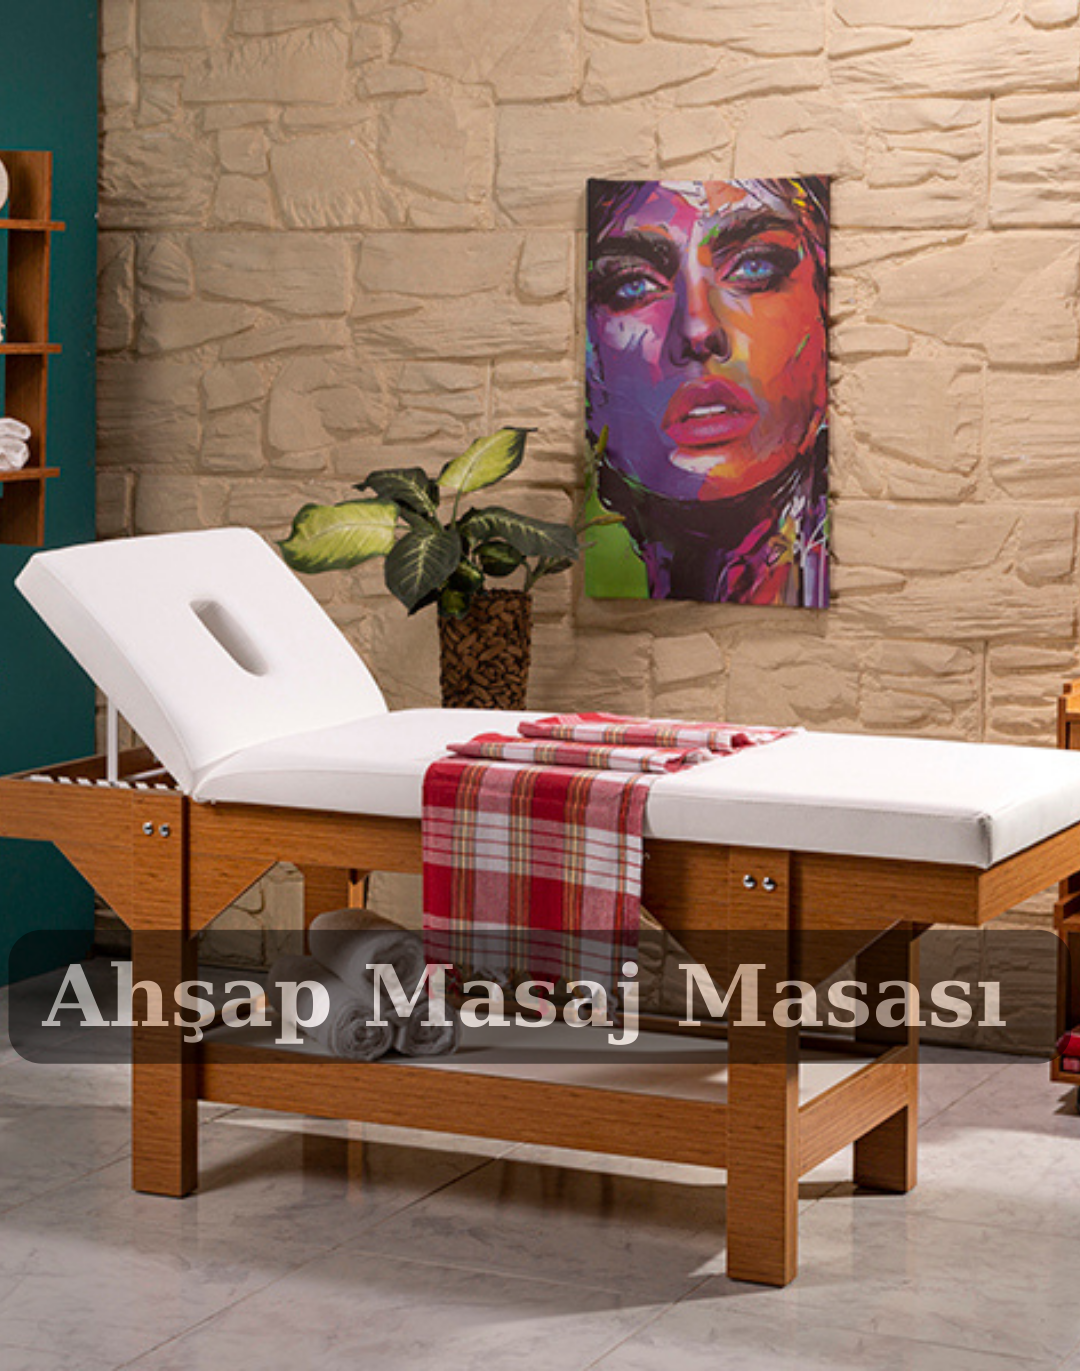 Ahsap Masaj Masasi Logo